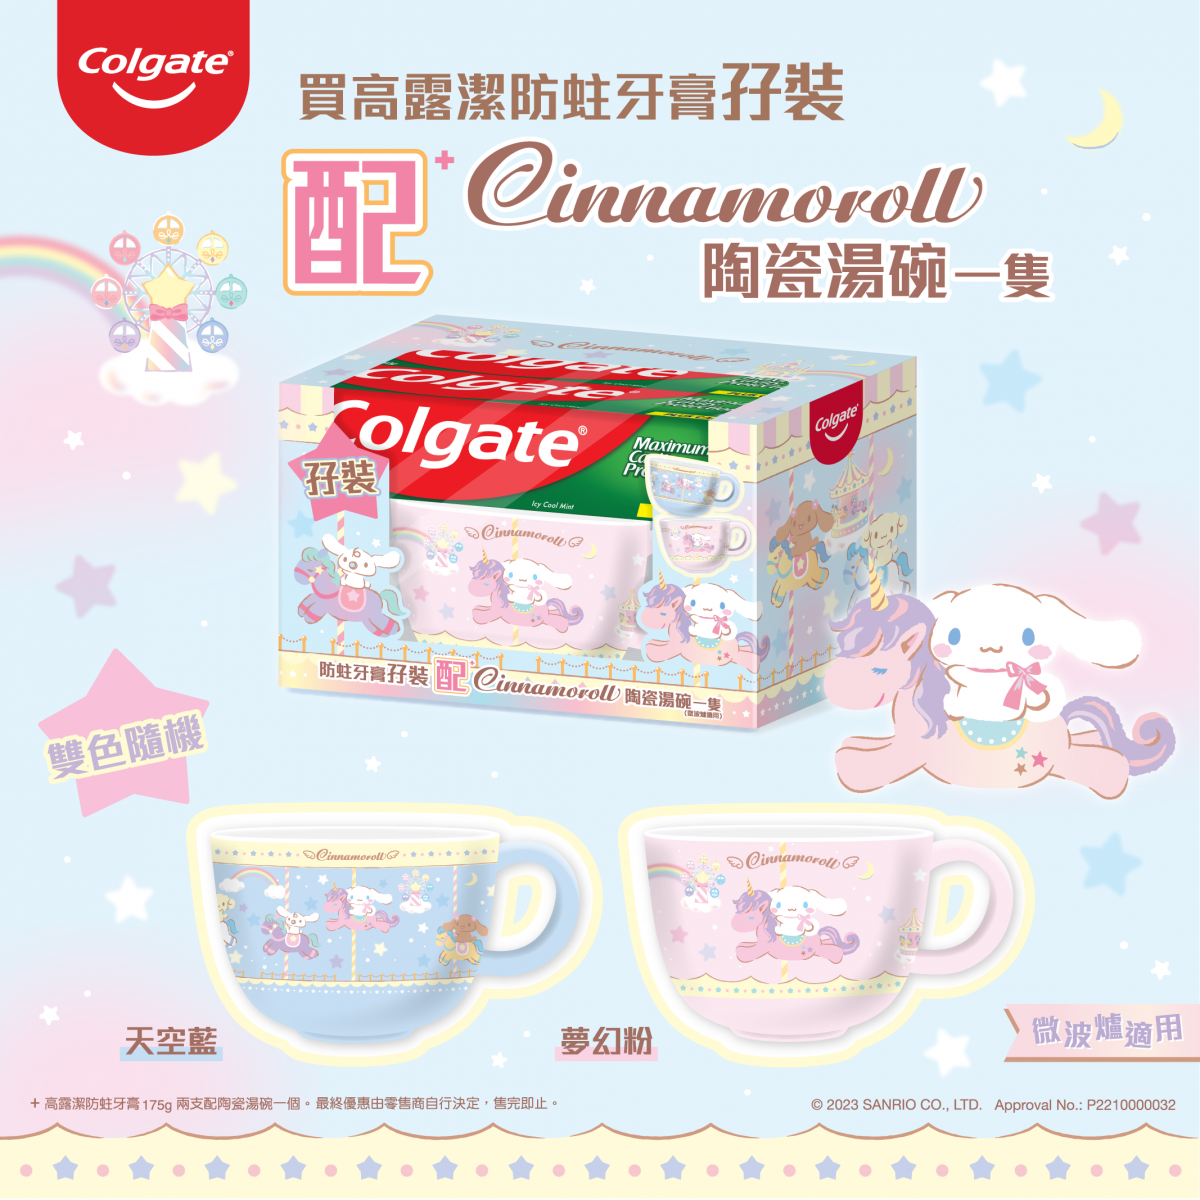 Soup Mug - Sanrio Cinnamoroll Colgate (Hong Kong Edition)